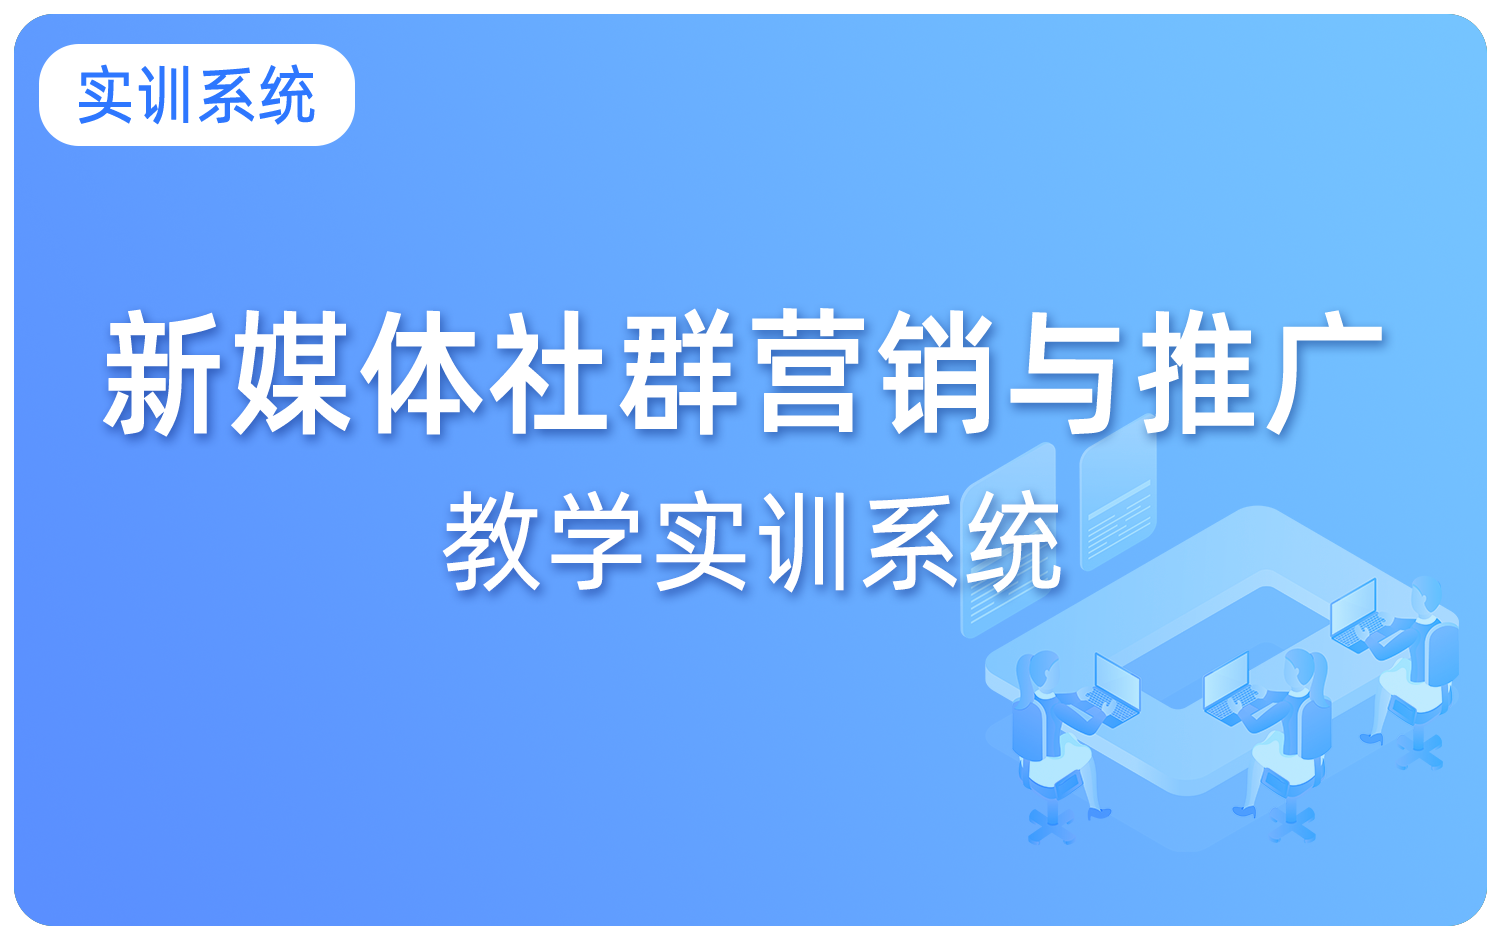 新(xīn)媒體(tǐ)社群营销教學(xué)实训系统